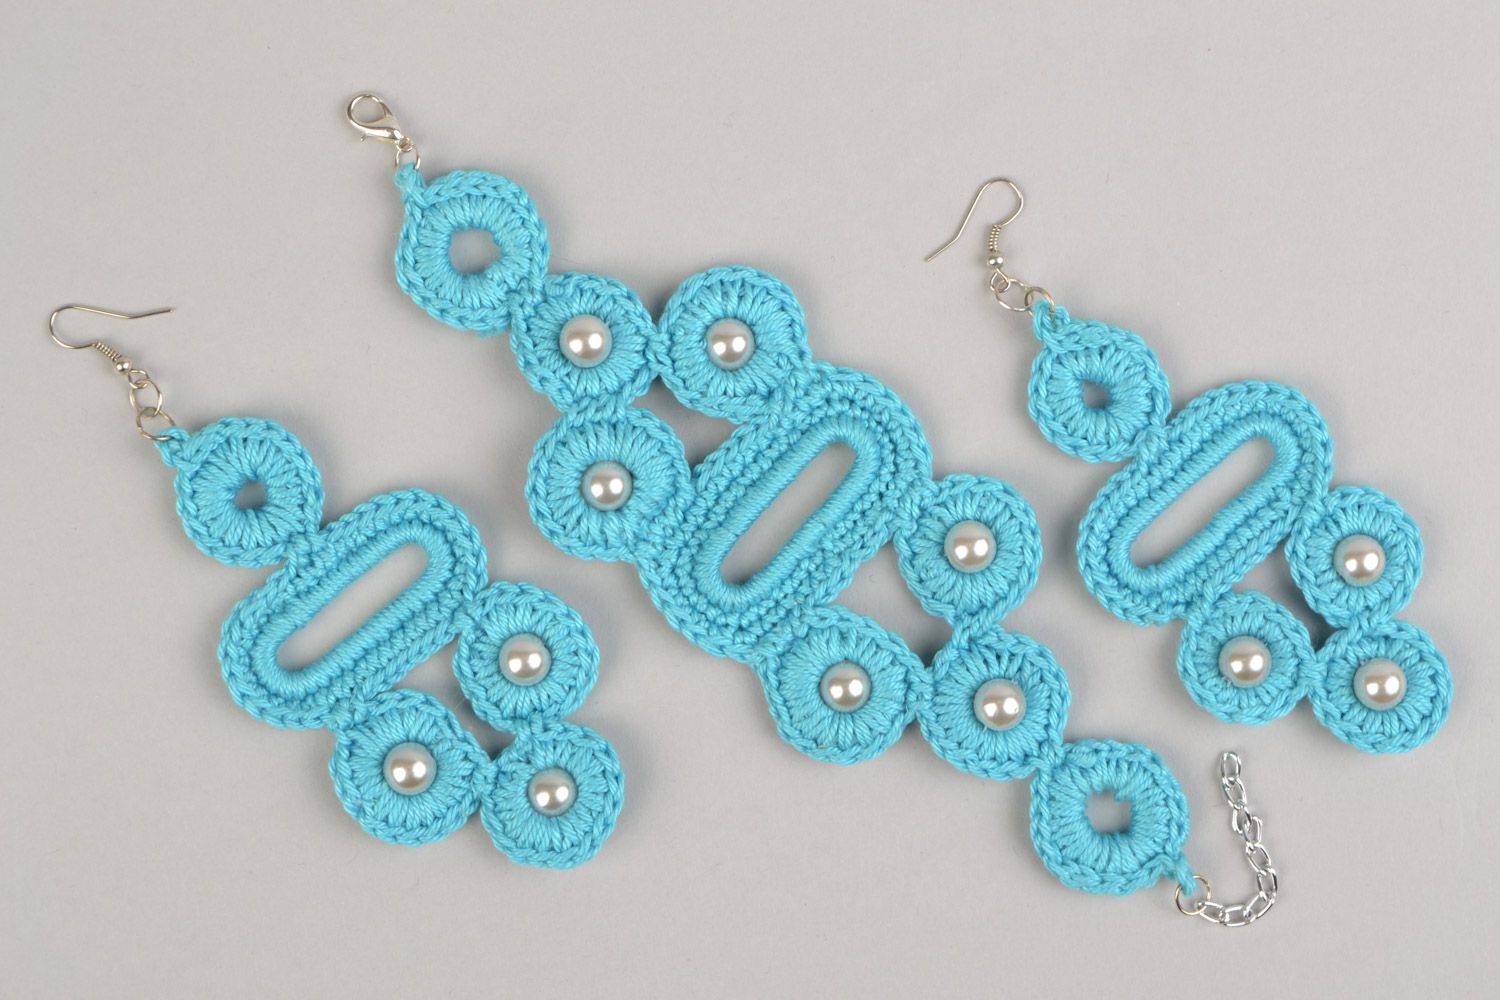 Textil Schmuckset 2 Stück Ohrringe und Armband aus Fäden geflochten in Blau handmade foto 2